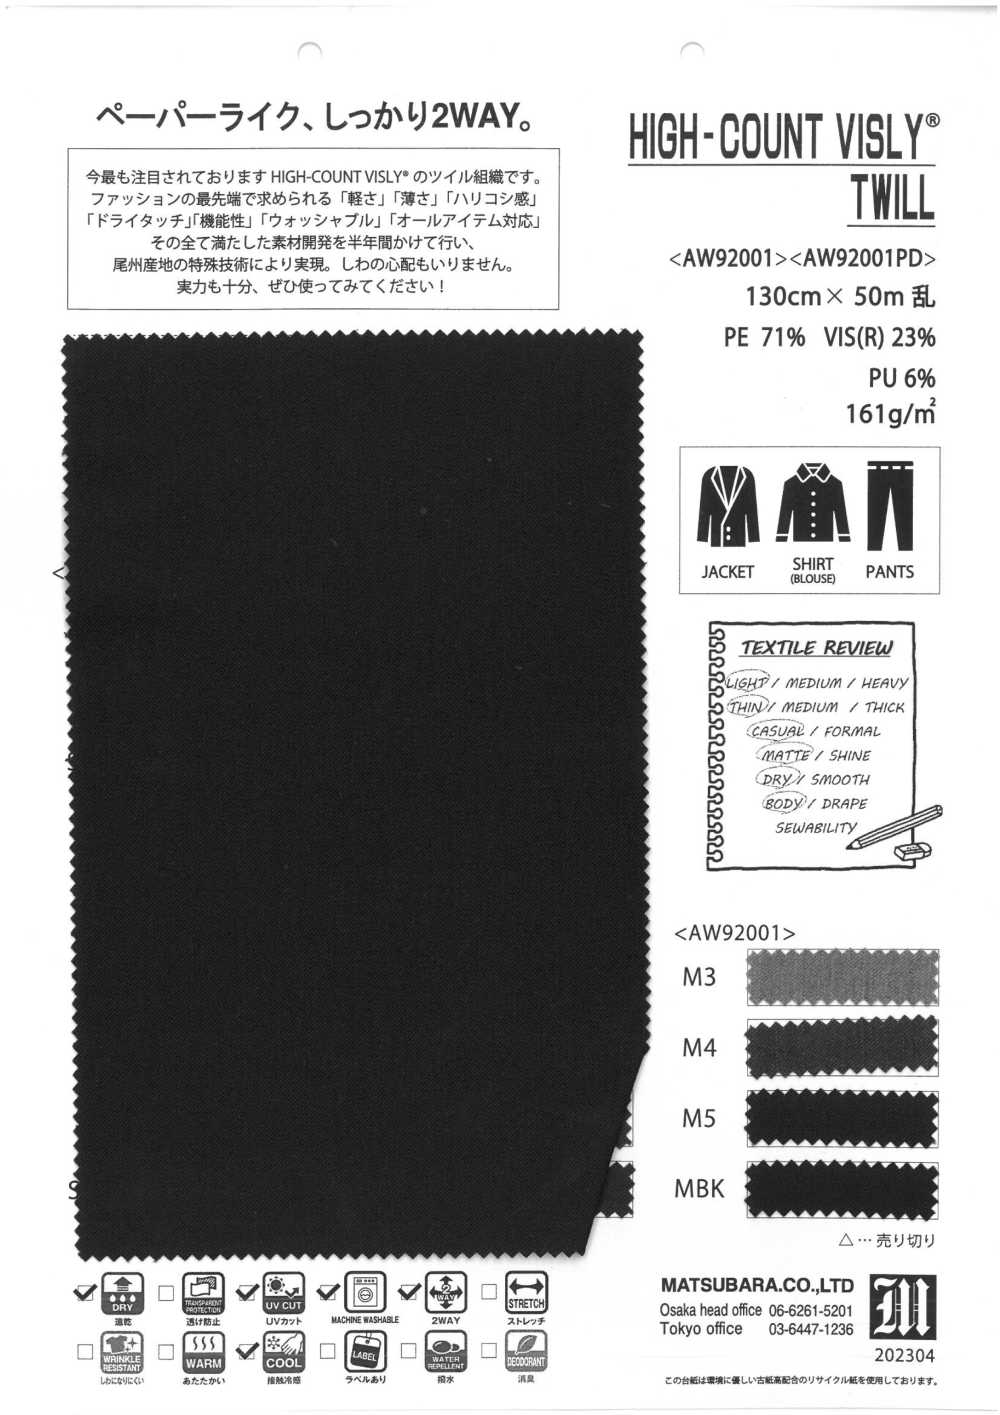 AW92001PD Sarga Bisley De Recuento Alto[Fabrica Textil] Matsubara